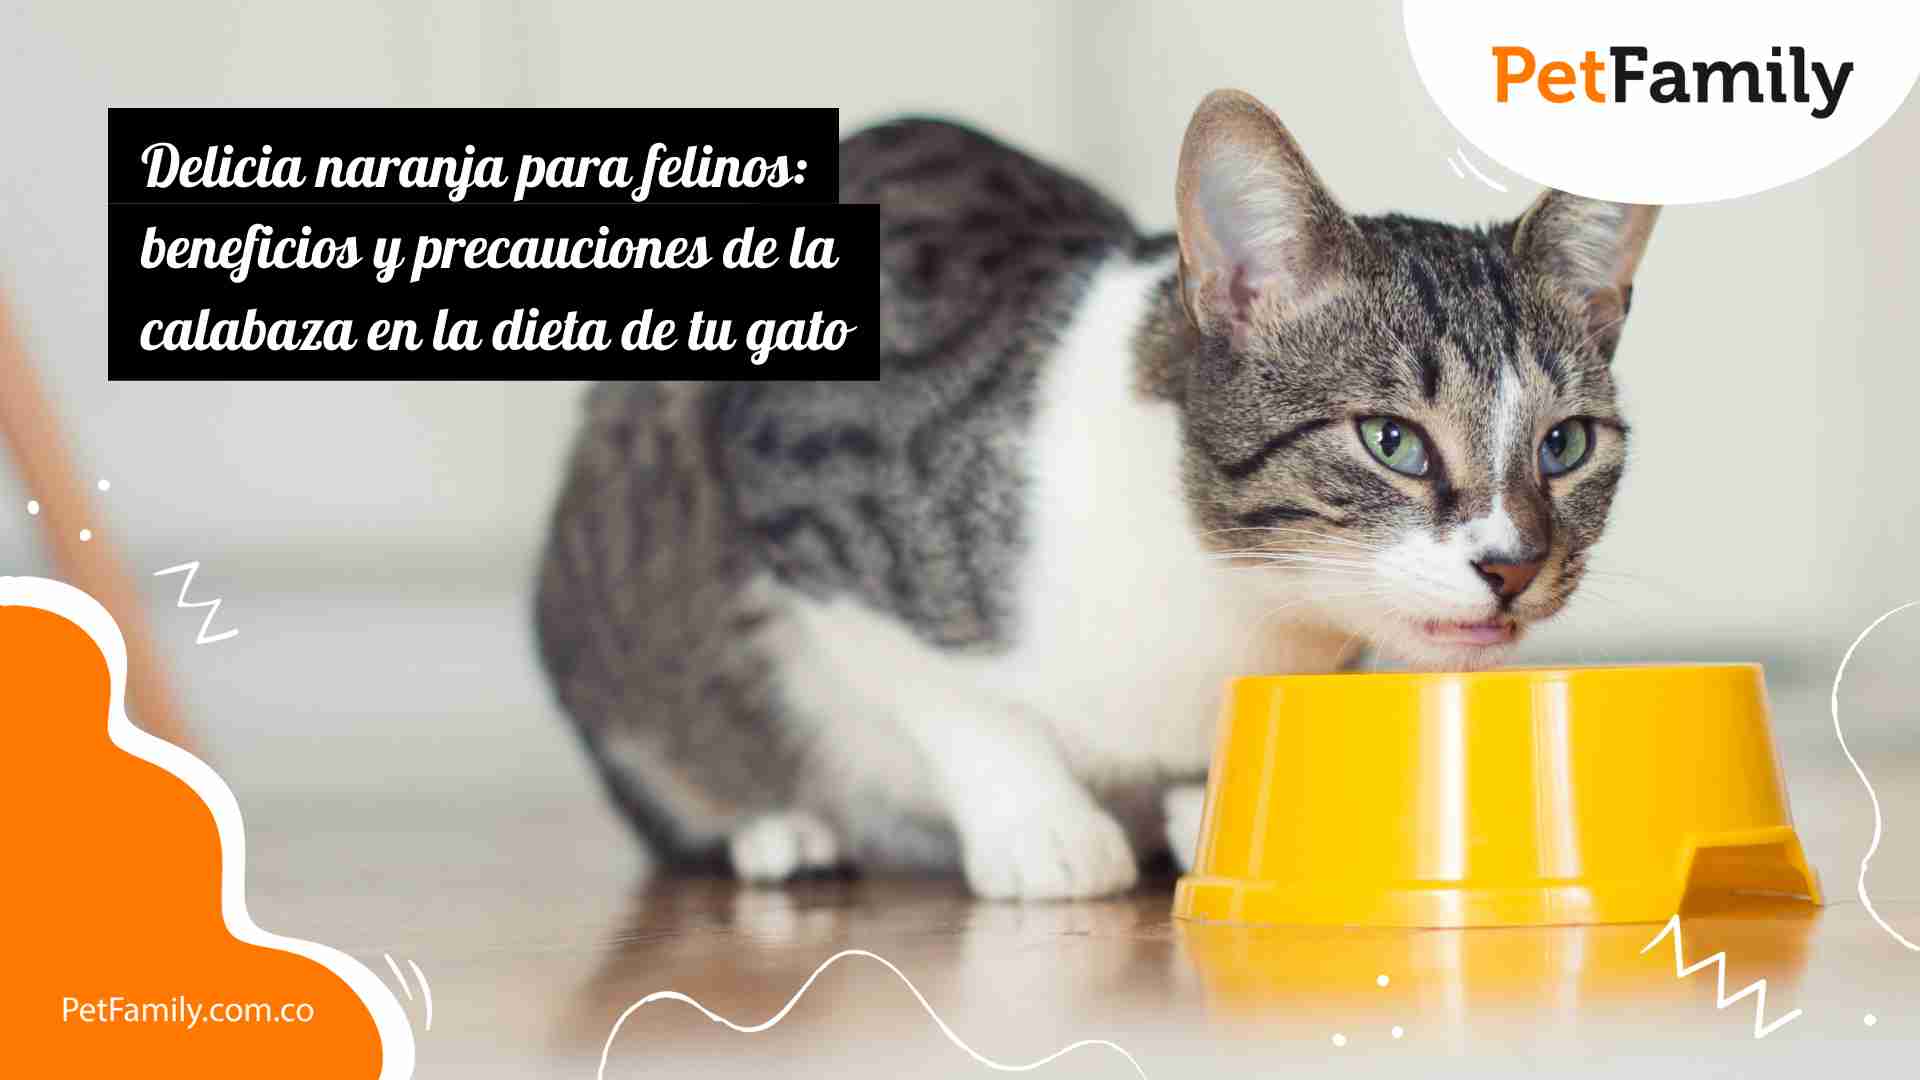 Delicia naranja para felinos: beneficios y precauciones de la calabaza en la dieta de tu gato 